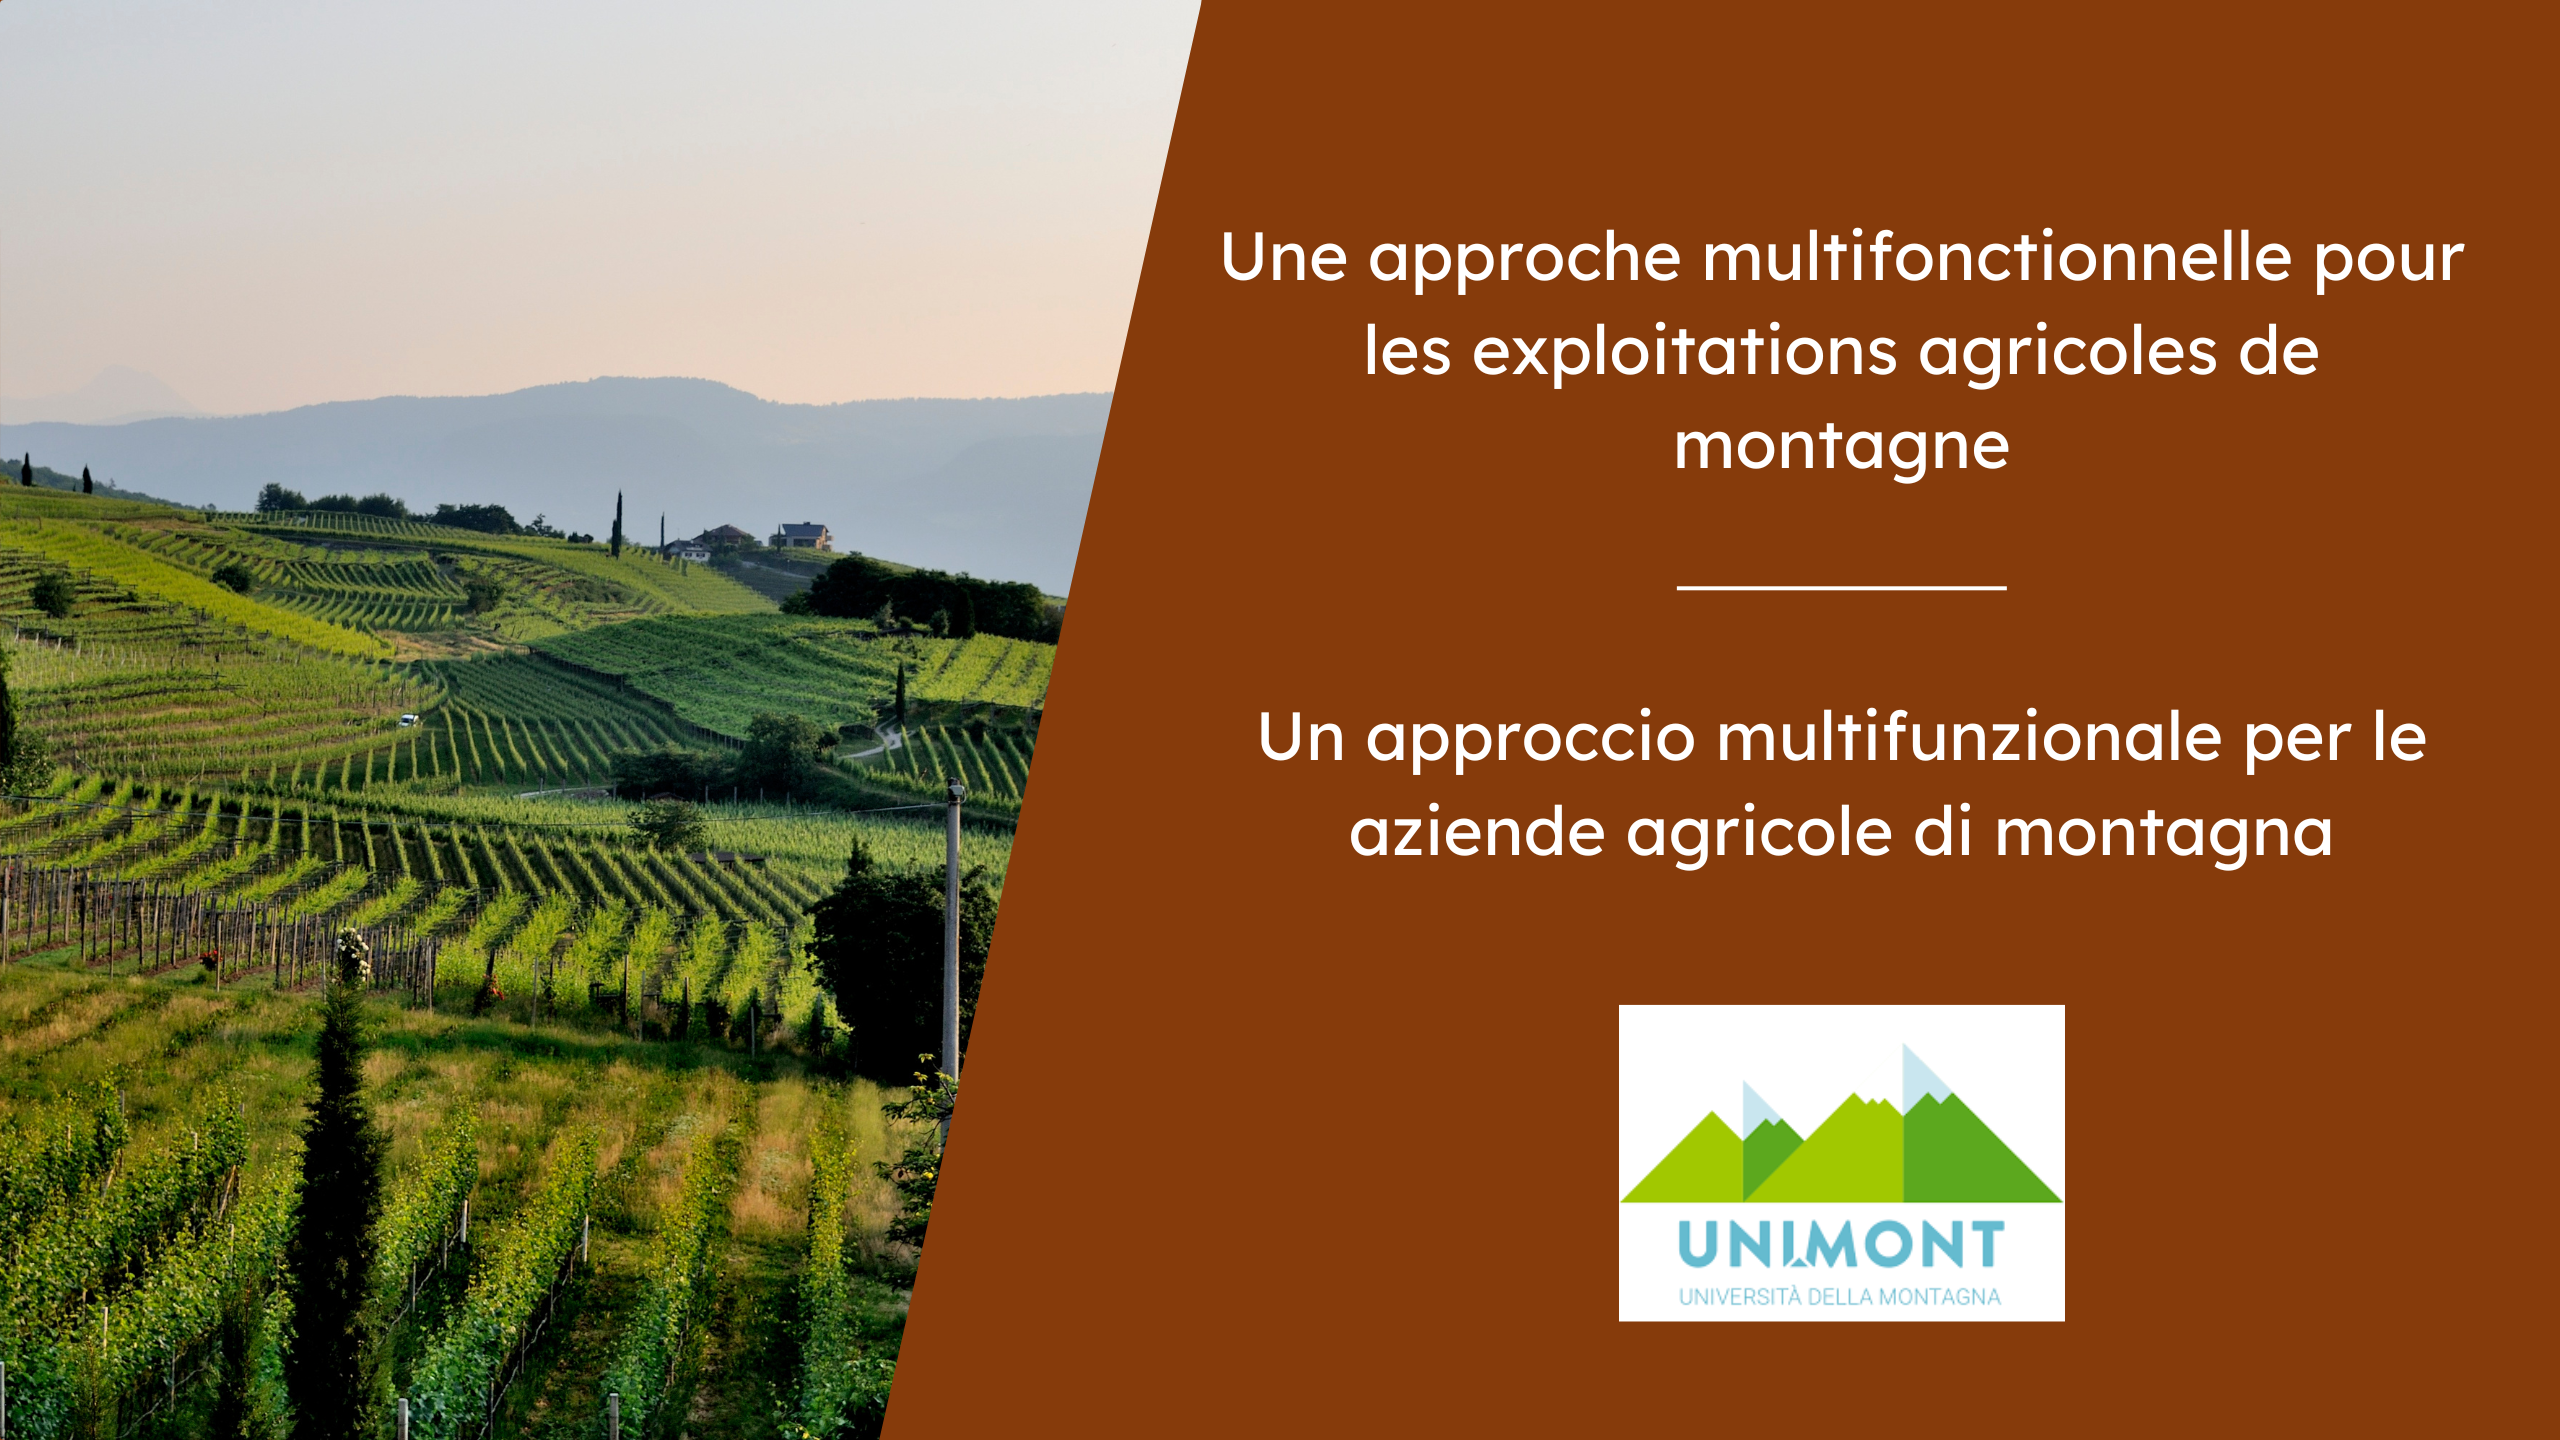 Une approche multifonctionnelle pour les exploitation agricoles de montagne